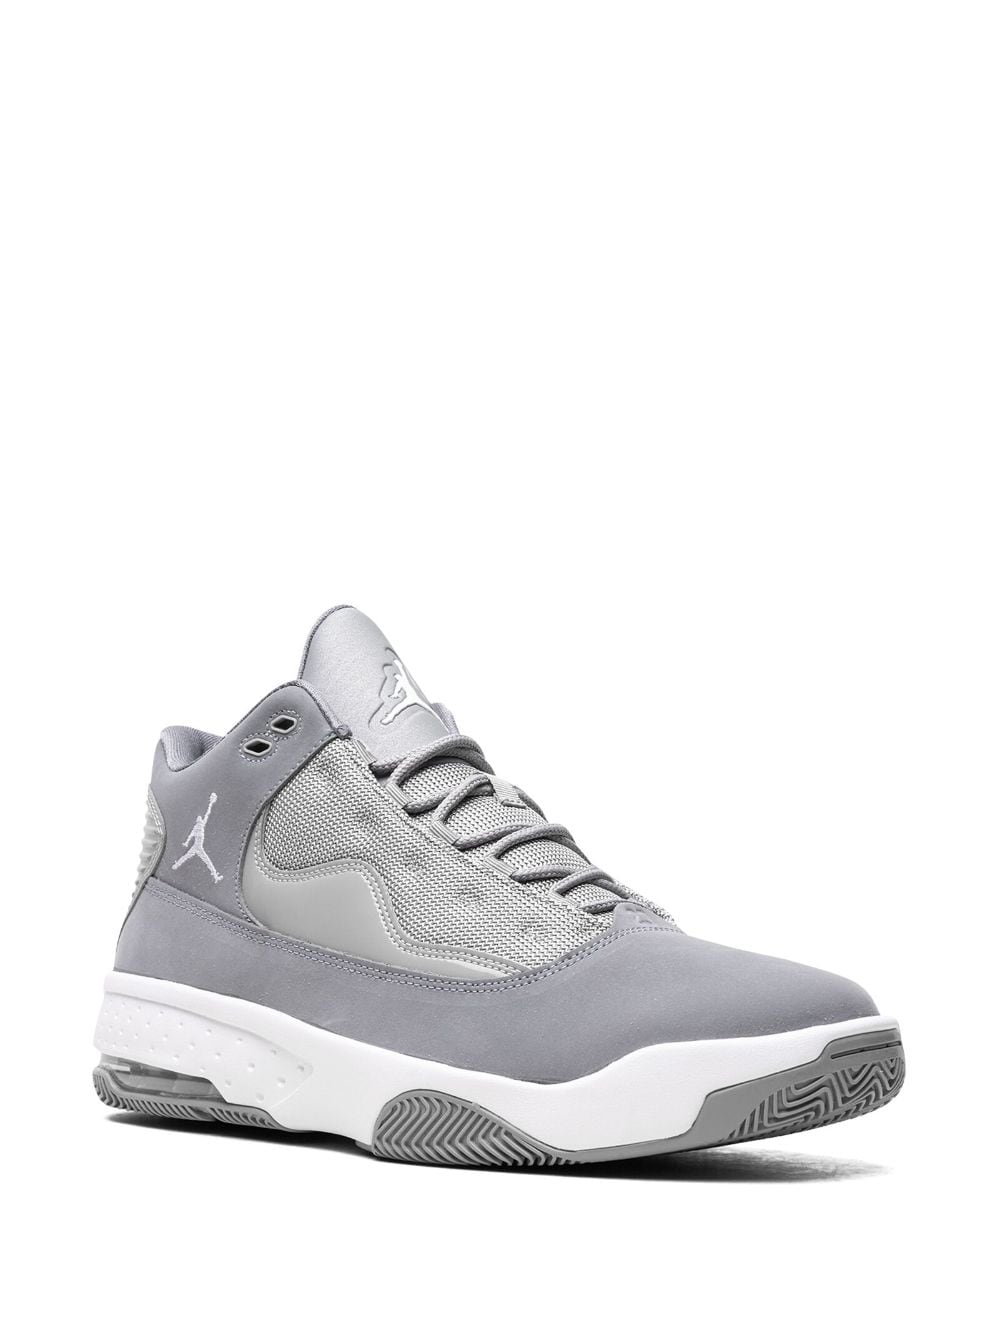 Image 2 of Jordan Max Aura 2 "Cool Grey" sneakers